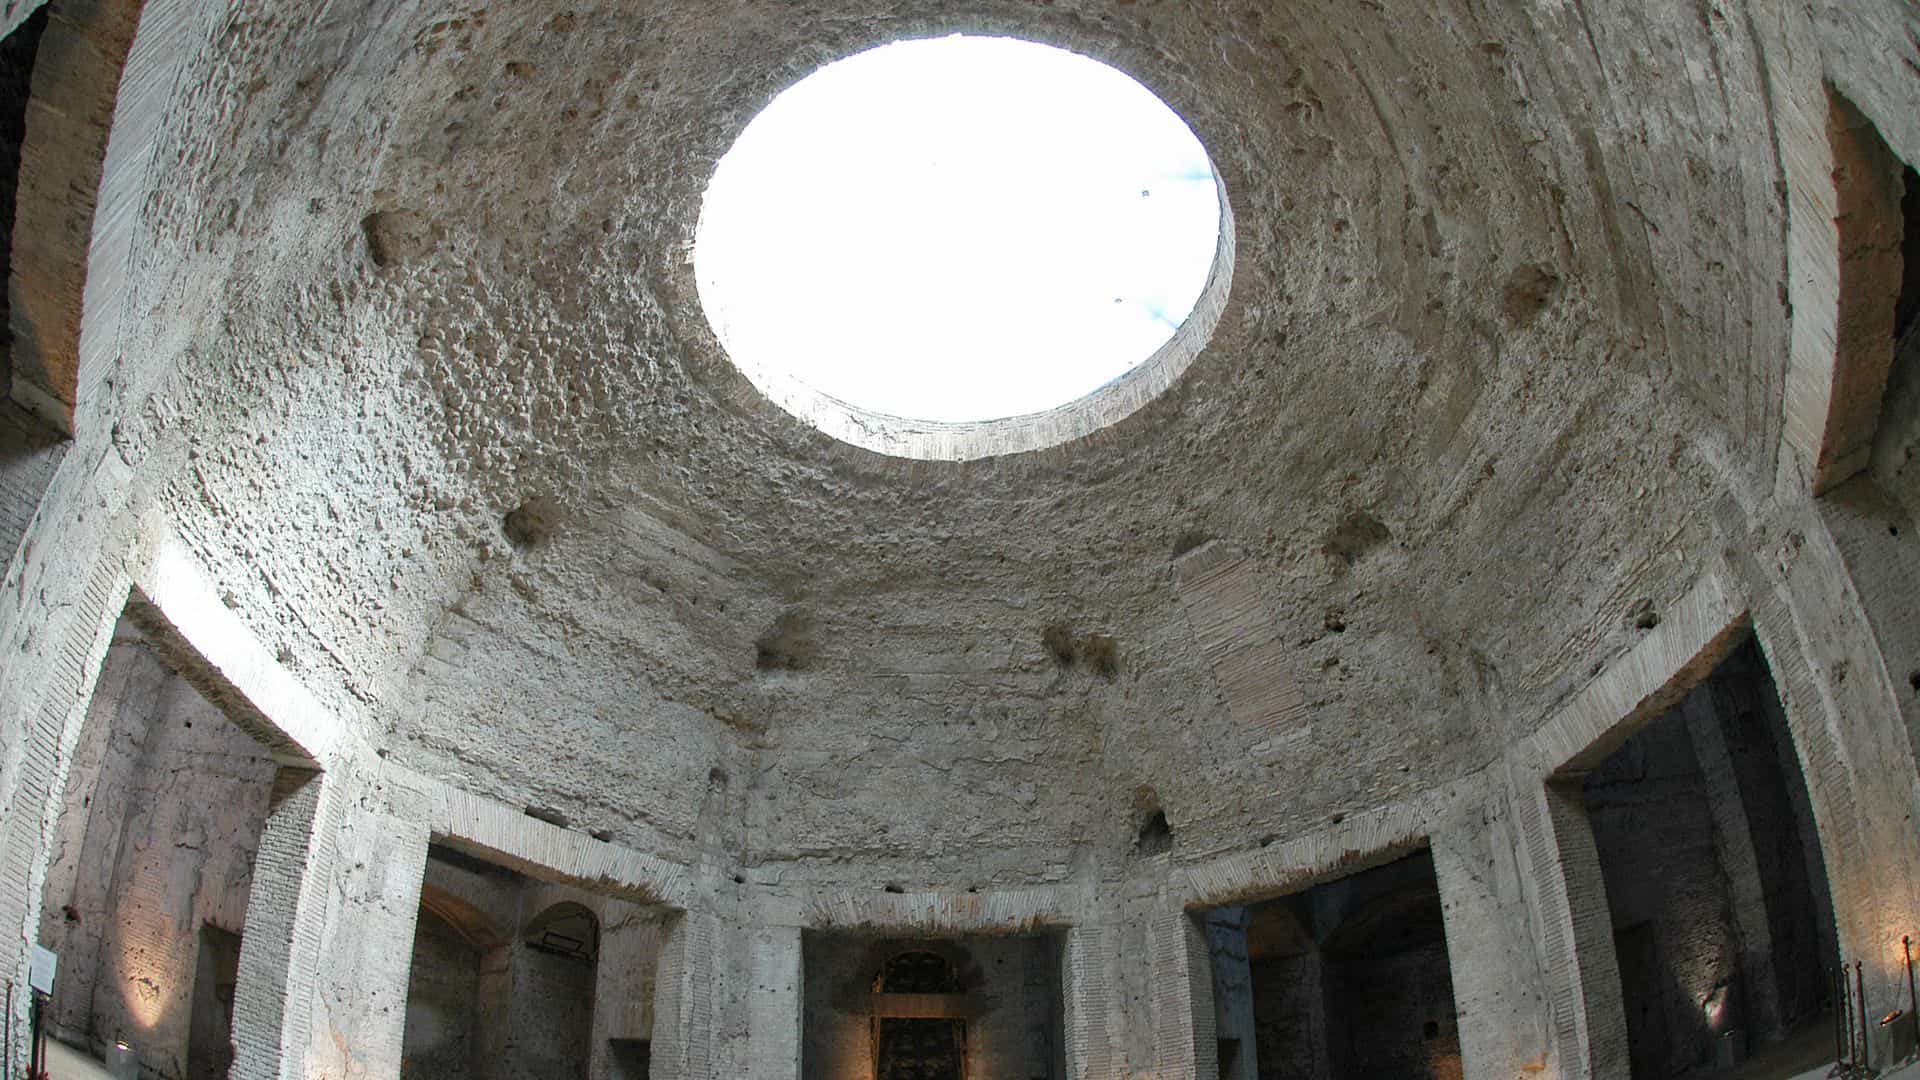 The interior dome of Emperor Nero's Domus Aurea.